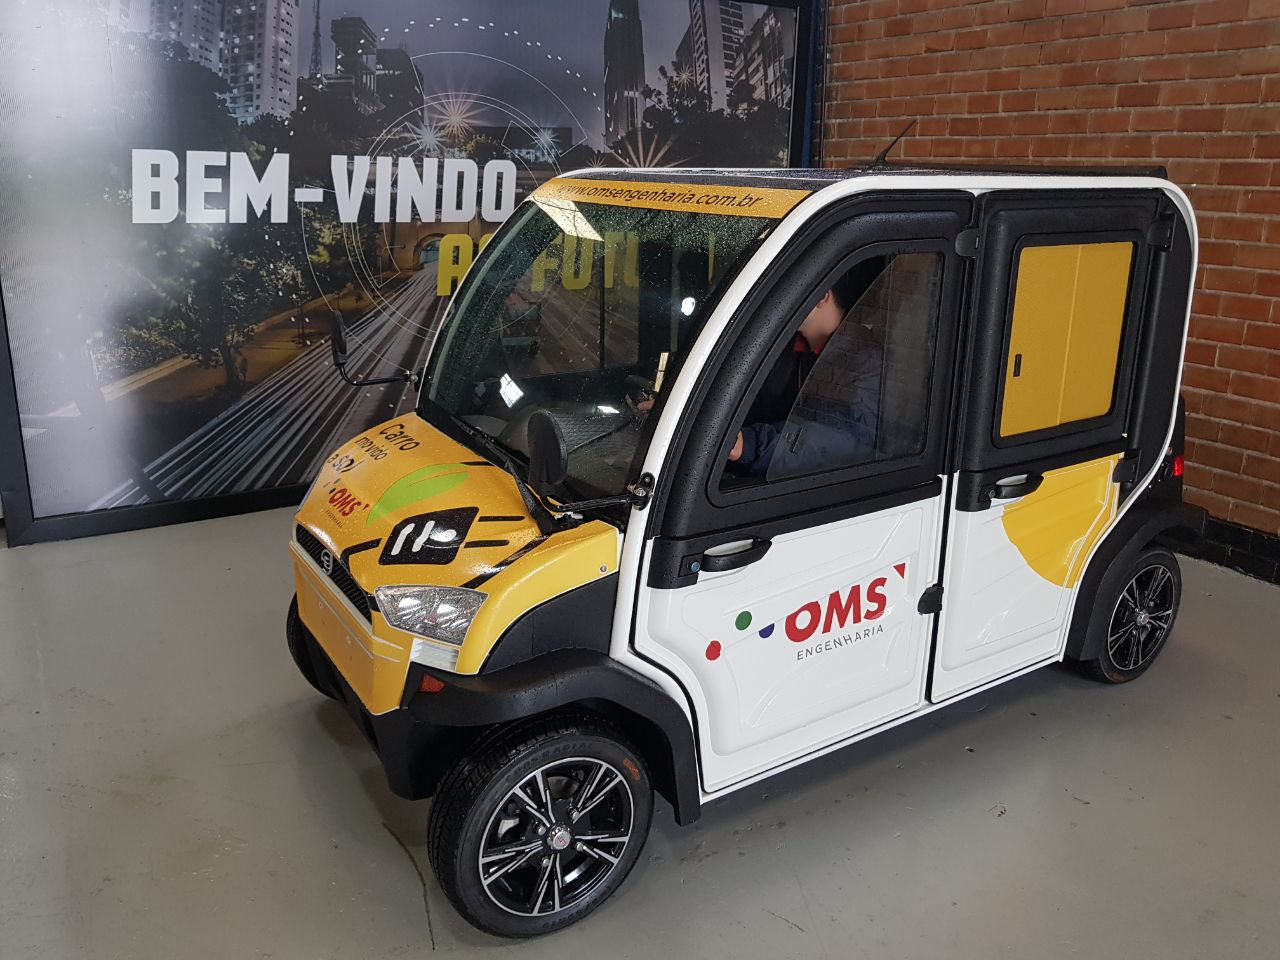  Empresa de Curitiba desenvolve carro movido a energia solar